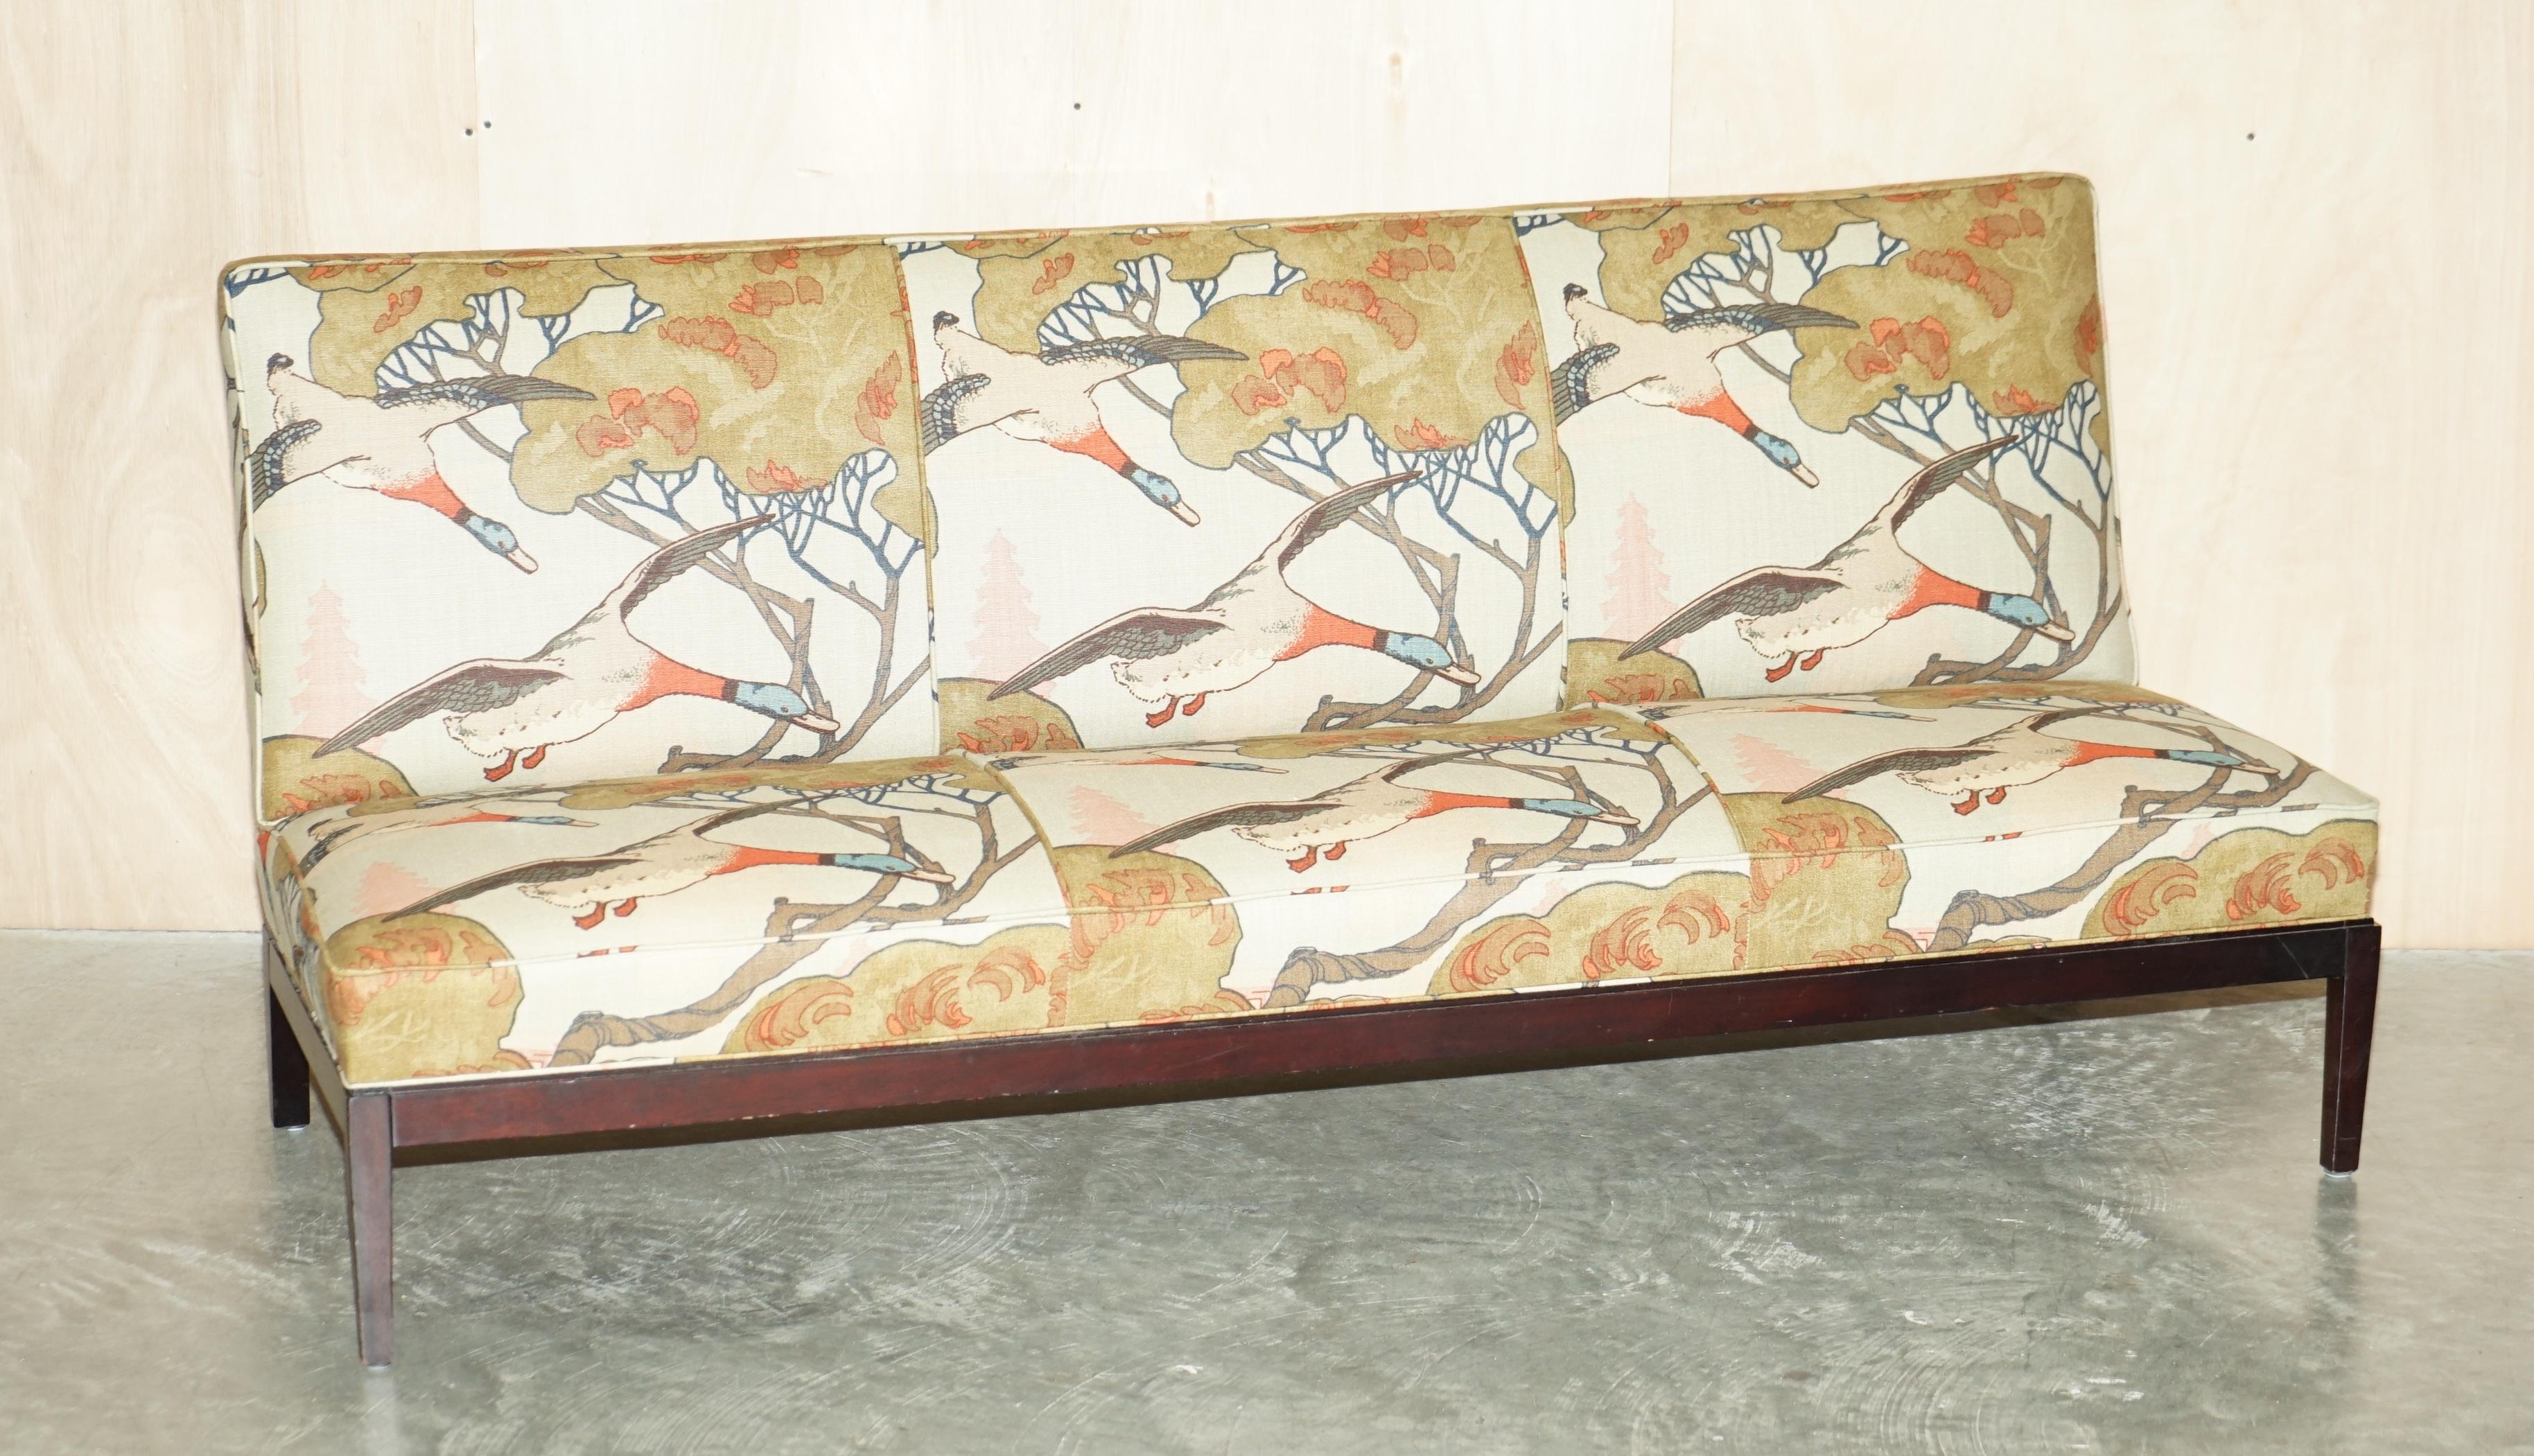 Wir freuen uns, dieses komplett renovierte George Smith Norris Sofa mit drei Sitzen, gepolstert mit Mulberry Flying Ducks Leinen, zum Verkauf anzubieten

Dieses Sofa ist Teil einer Suite, ich habe auch fünf passende Sessel zu verkaufen, die Sessel